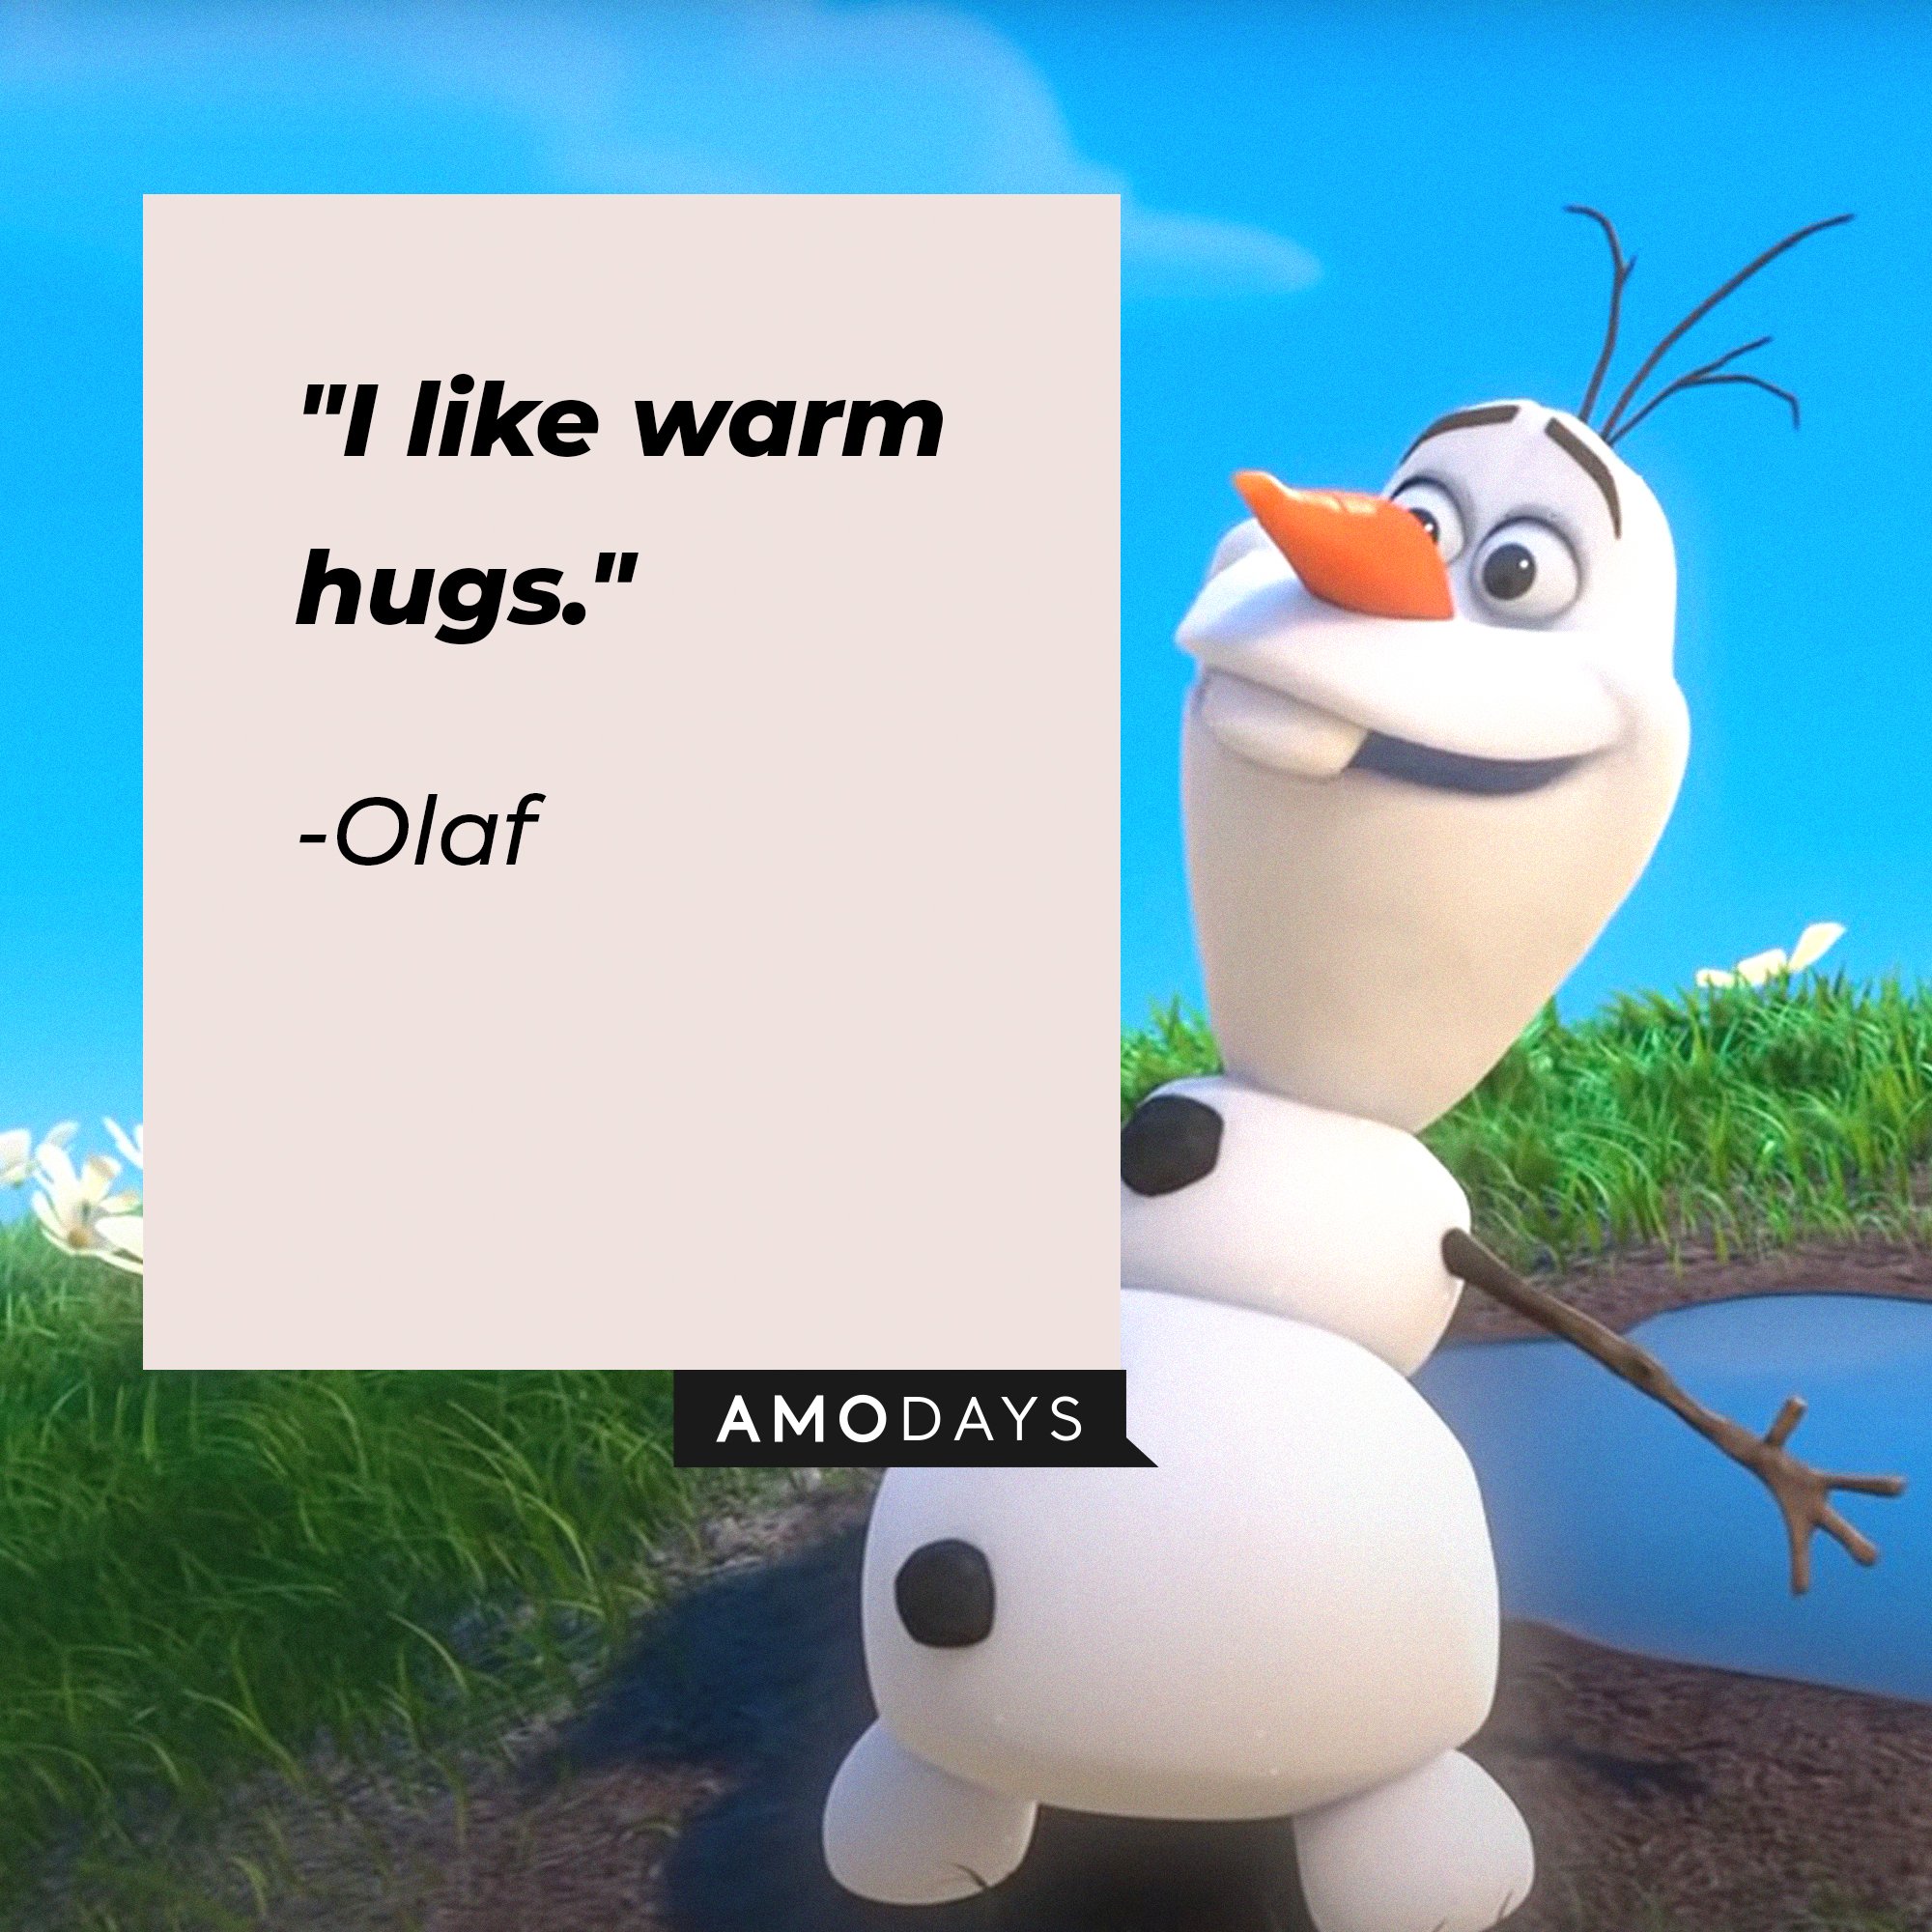 Olaf’s quote: "I like warm hugs." | Image: AmoDays  